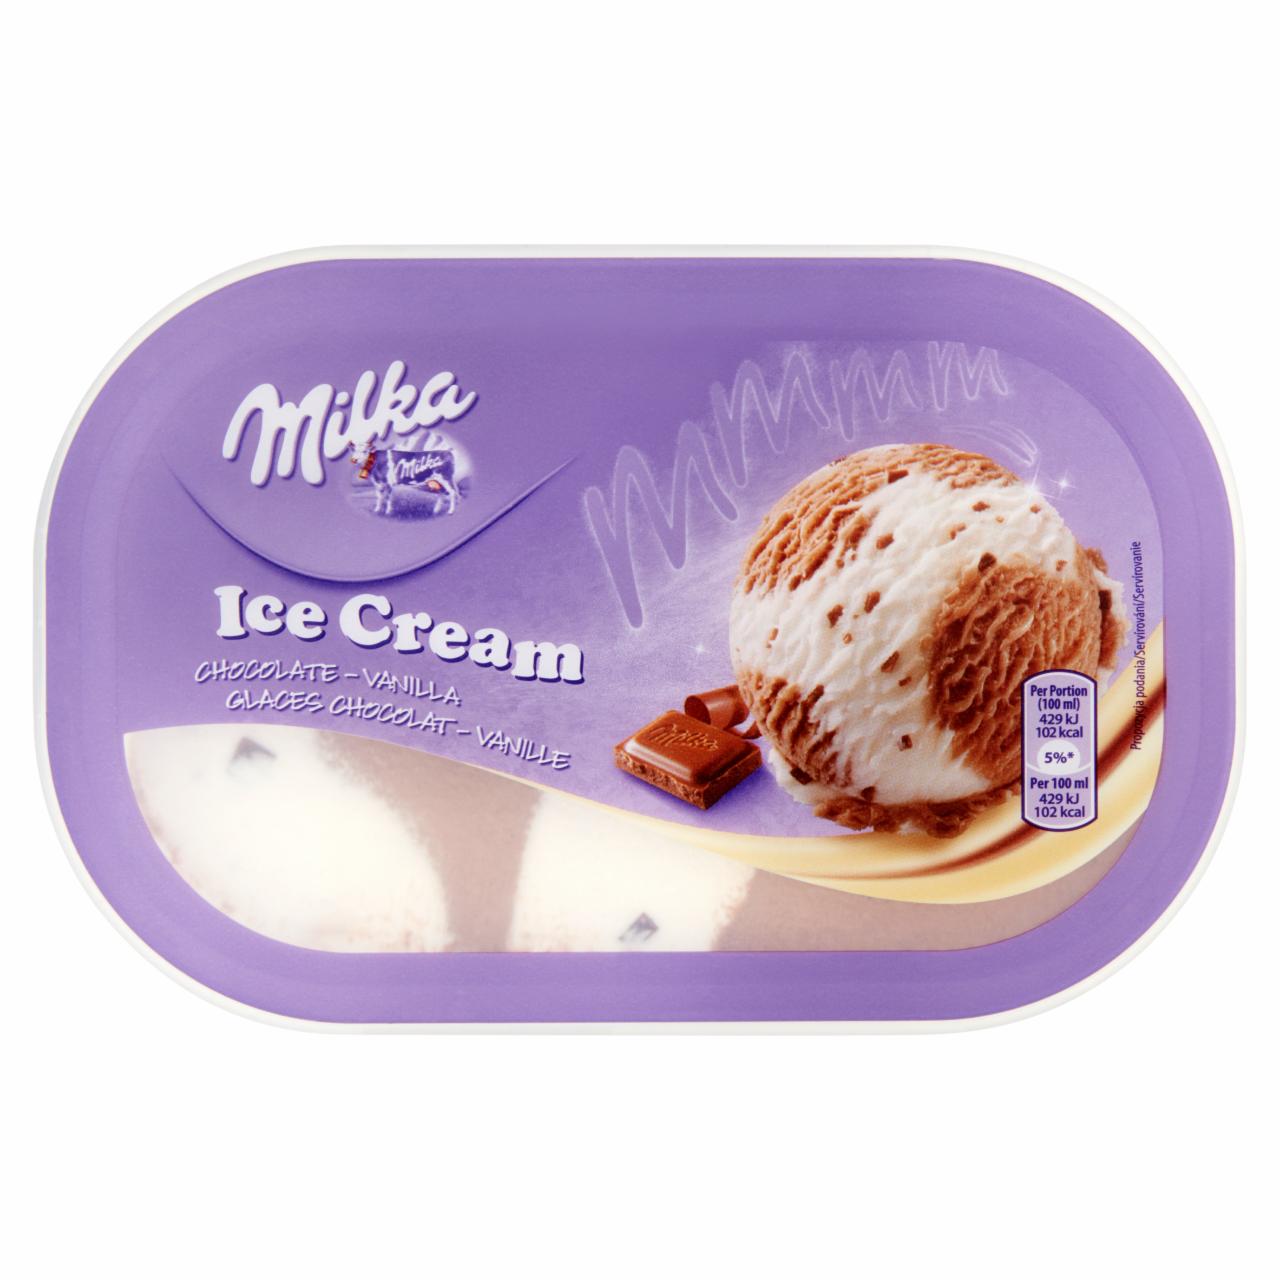 Képek - Milka csoki-vaníliajégkrém 900 ml